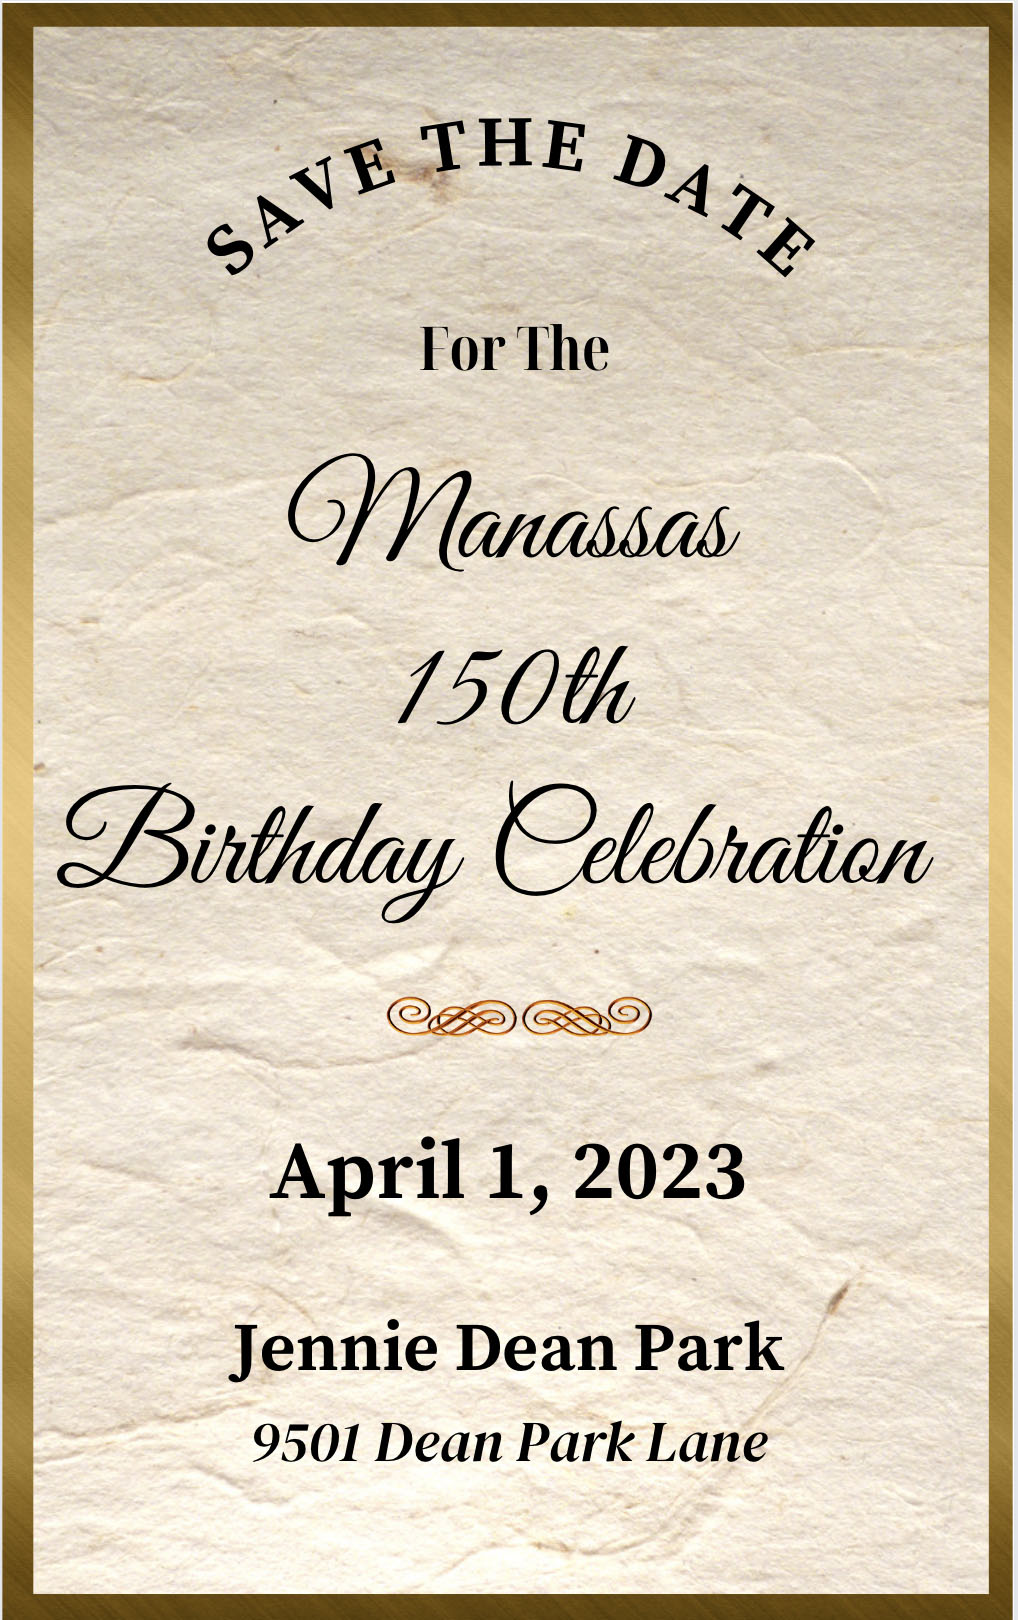 Manassas 150th Birthday Celebration